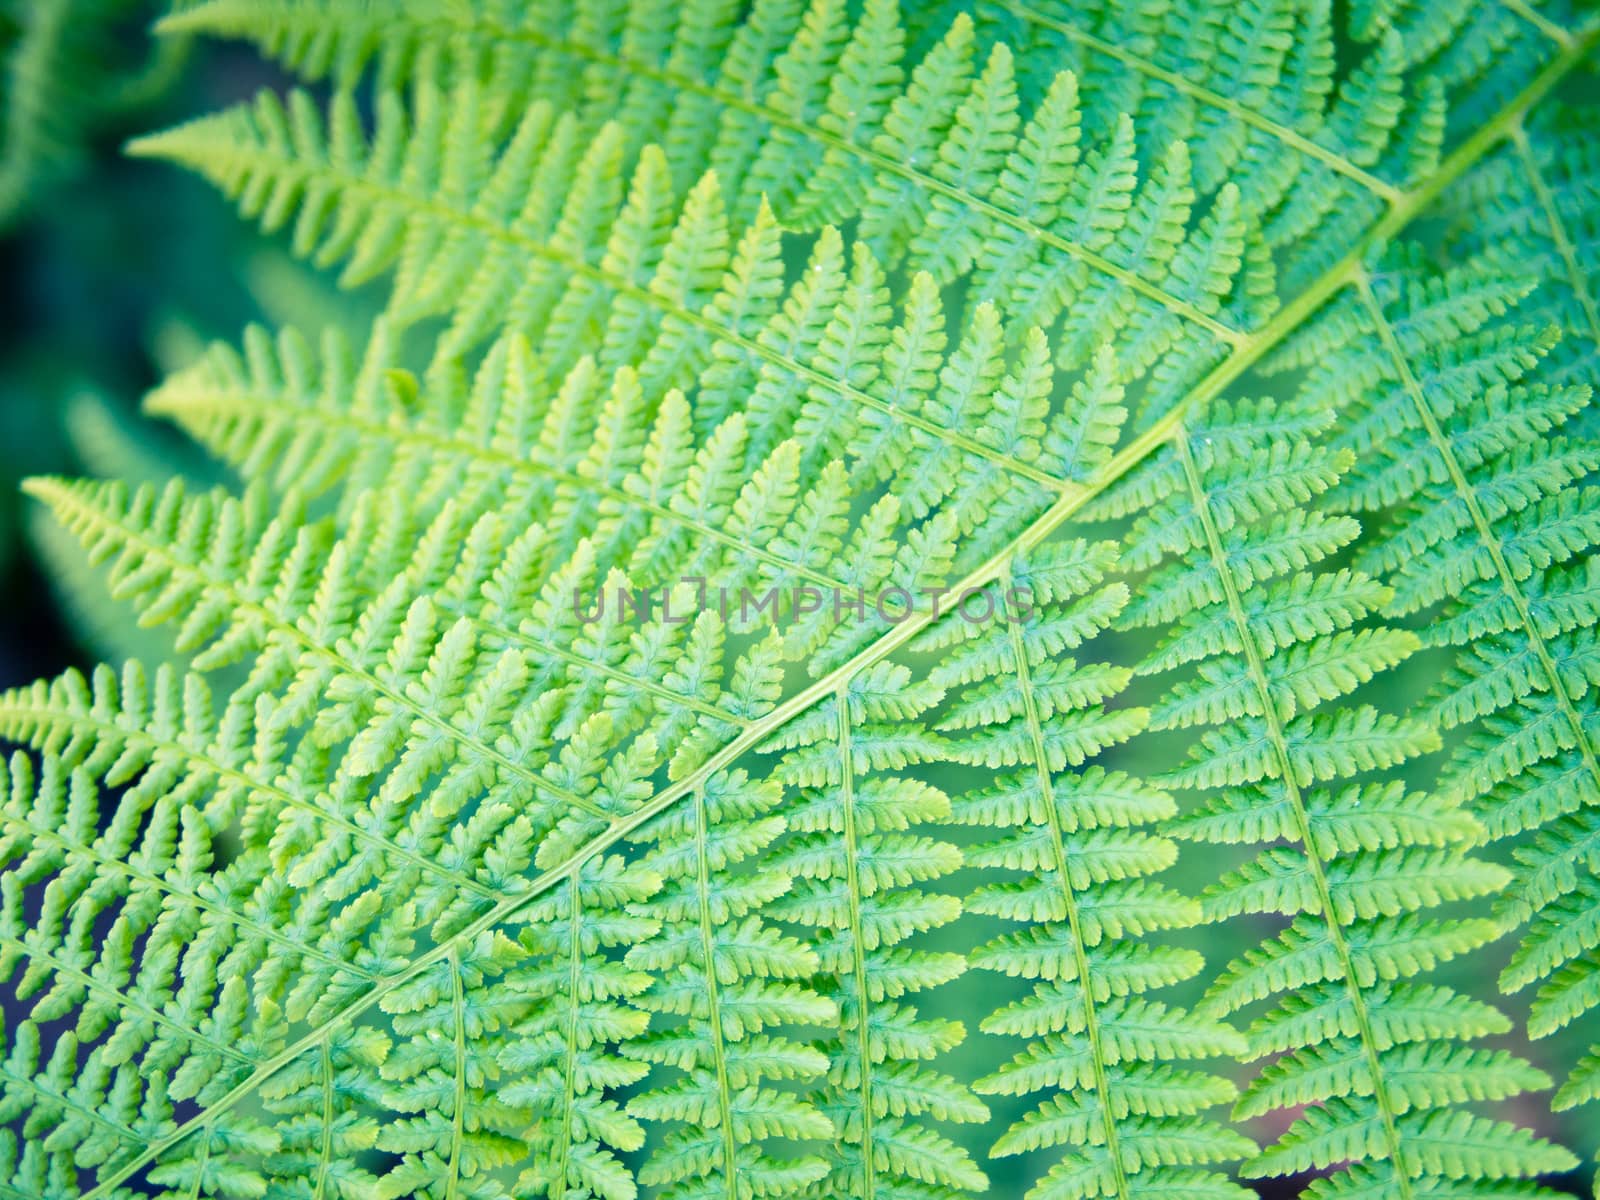 Ornament of fern leaf, symmetrical diagonal pattern, fresh green by weruskak